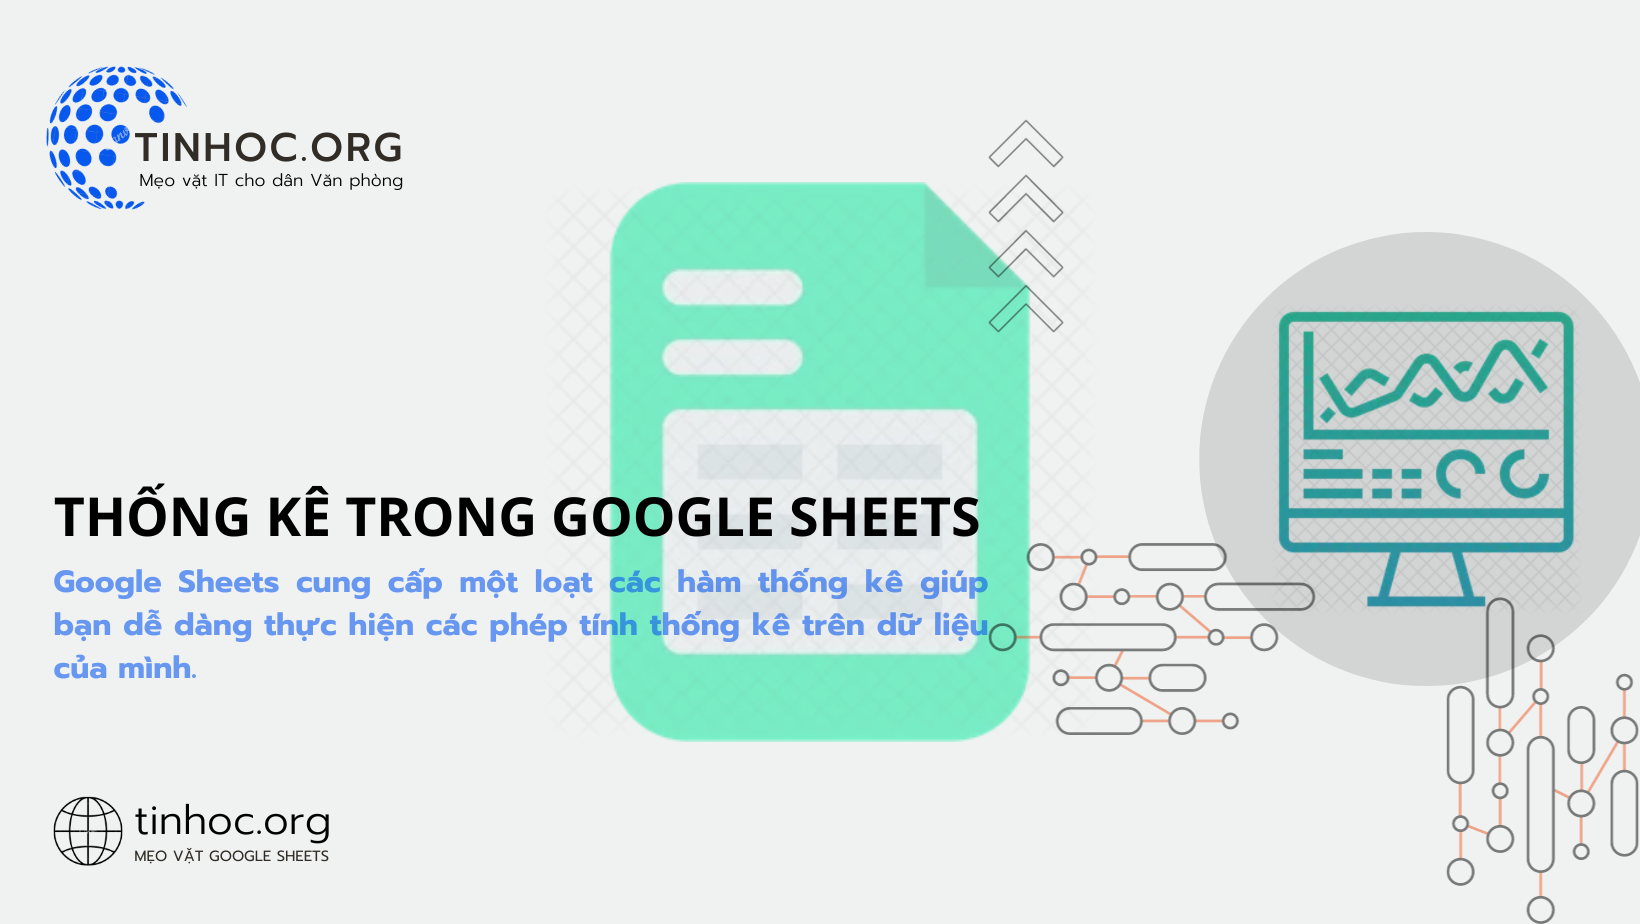 Google Sheets cung cấp một loạt các hàm thống kê giúp bạn dễ dàng thực hiện các phép tính thống kê trên dữ liệu của mình.